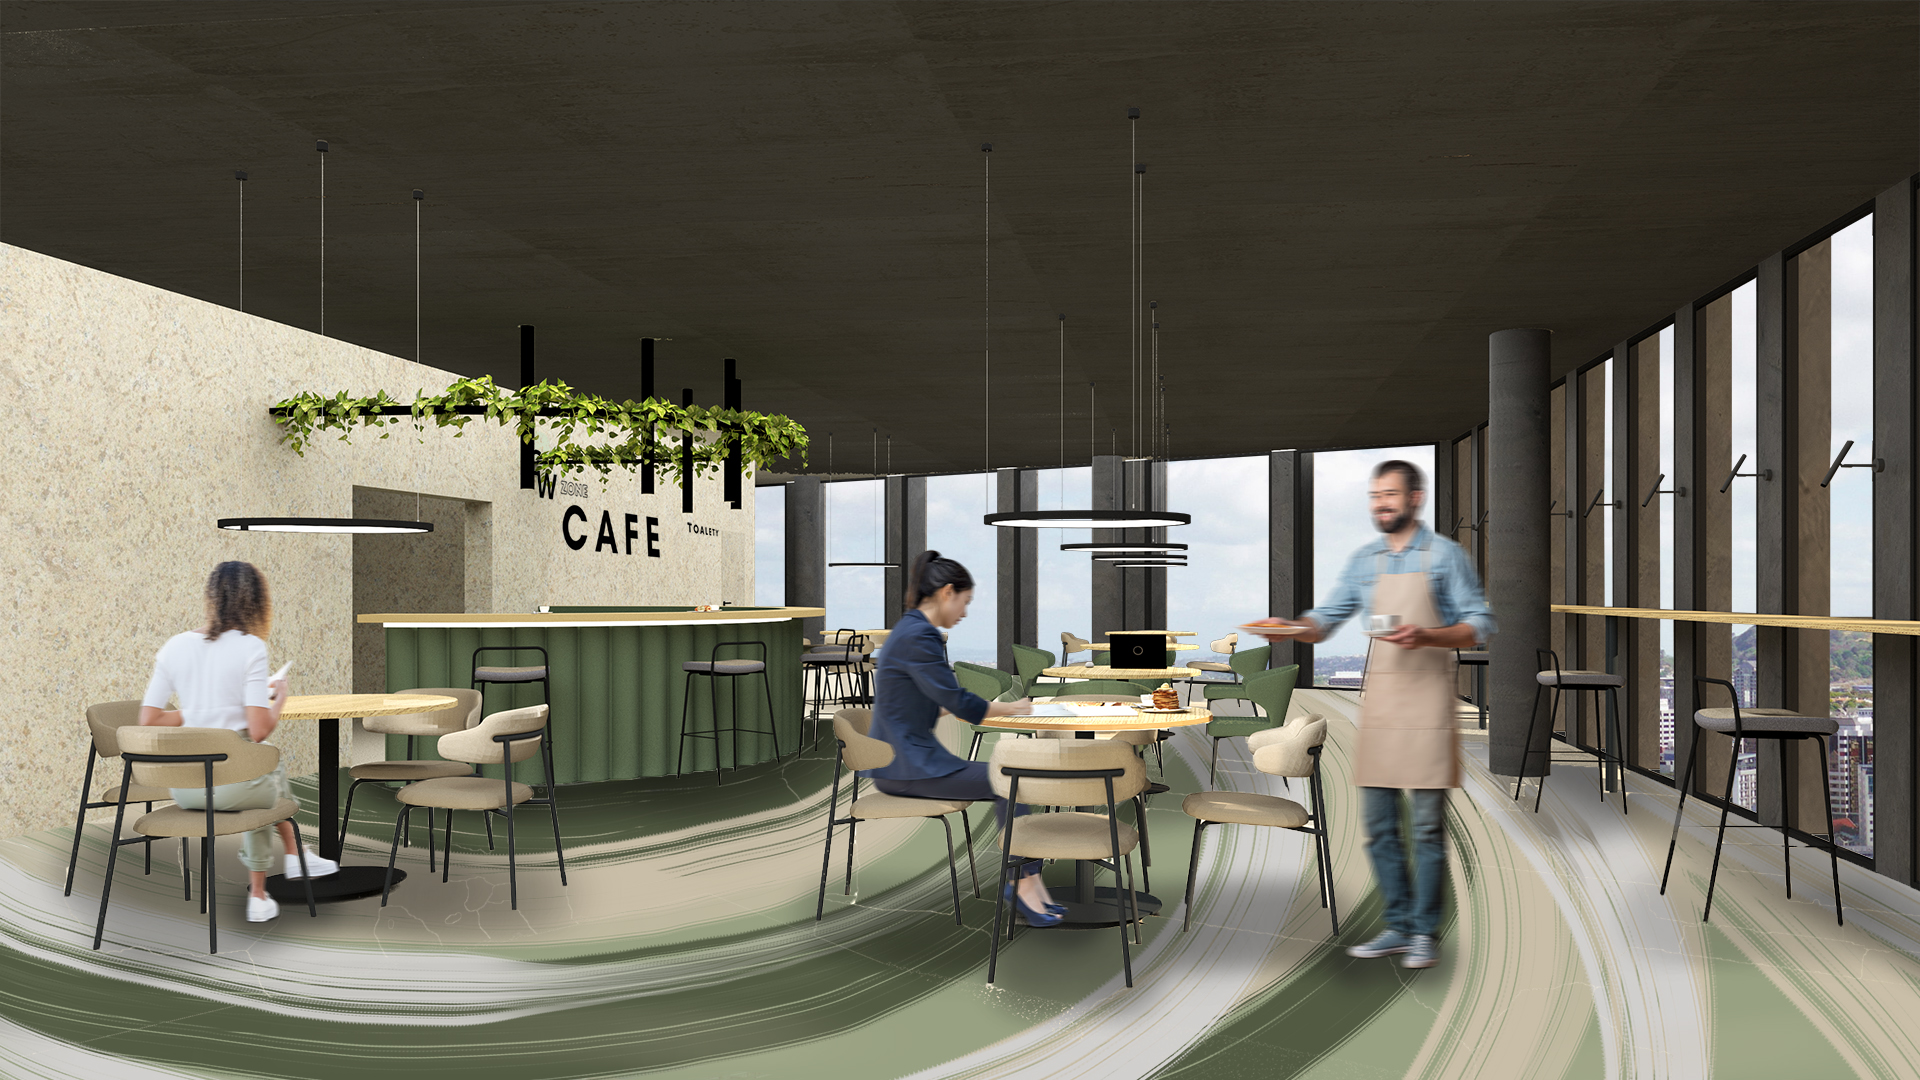 Barwna wizualizacja przedstawiająca widok na przestrzeń kawiarni - bar oraz część otwartą ze stolikami dla pracowników projektowanego biura.